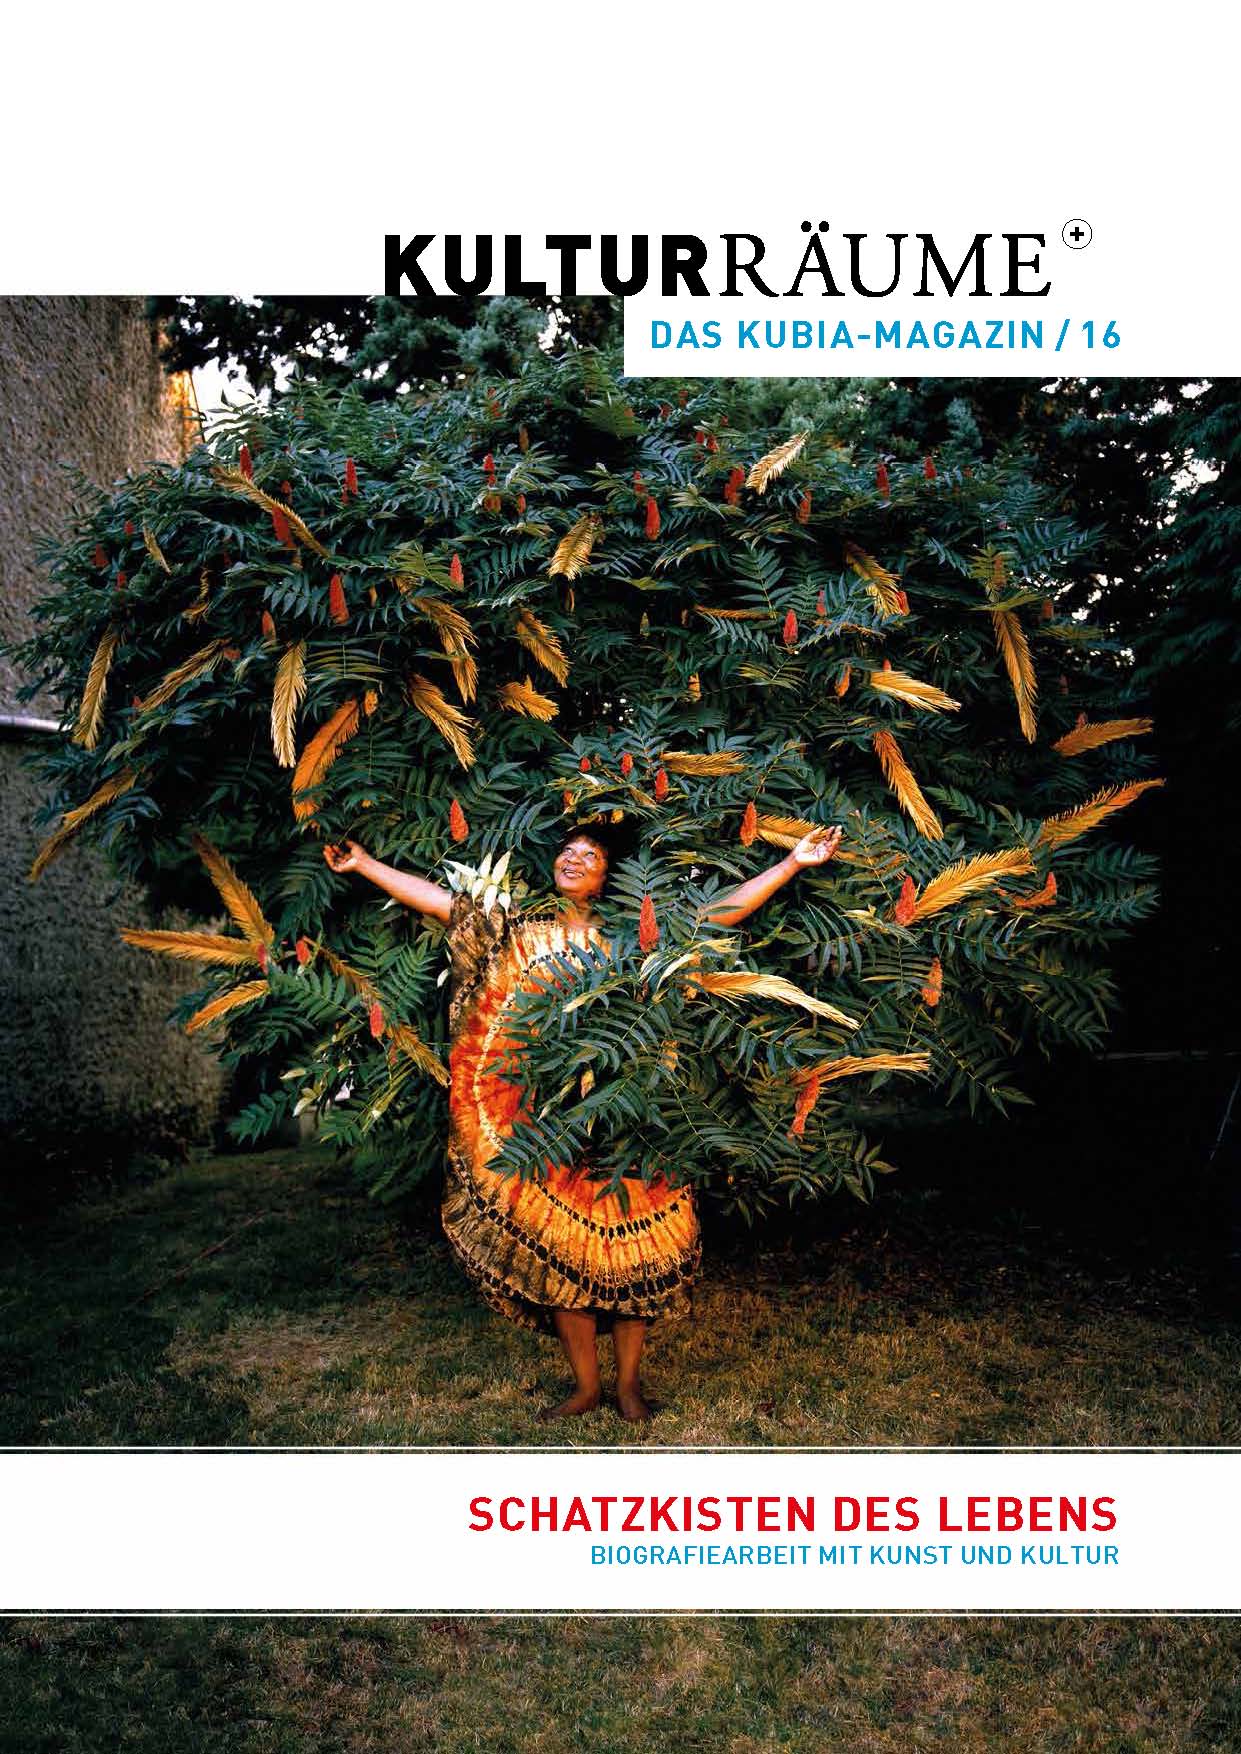 Cover der Kulturräume+ 16/2019. Foto von Nicolas Henry aus dem Projekt "Cabanes des nos grandparents": Schwarze Frau steht mit erhobenen Armen in gebatiktem Sonnenkleid unter einem afrikanischen Baum mit orangegelben Blütenständen.